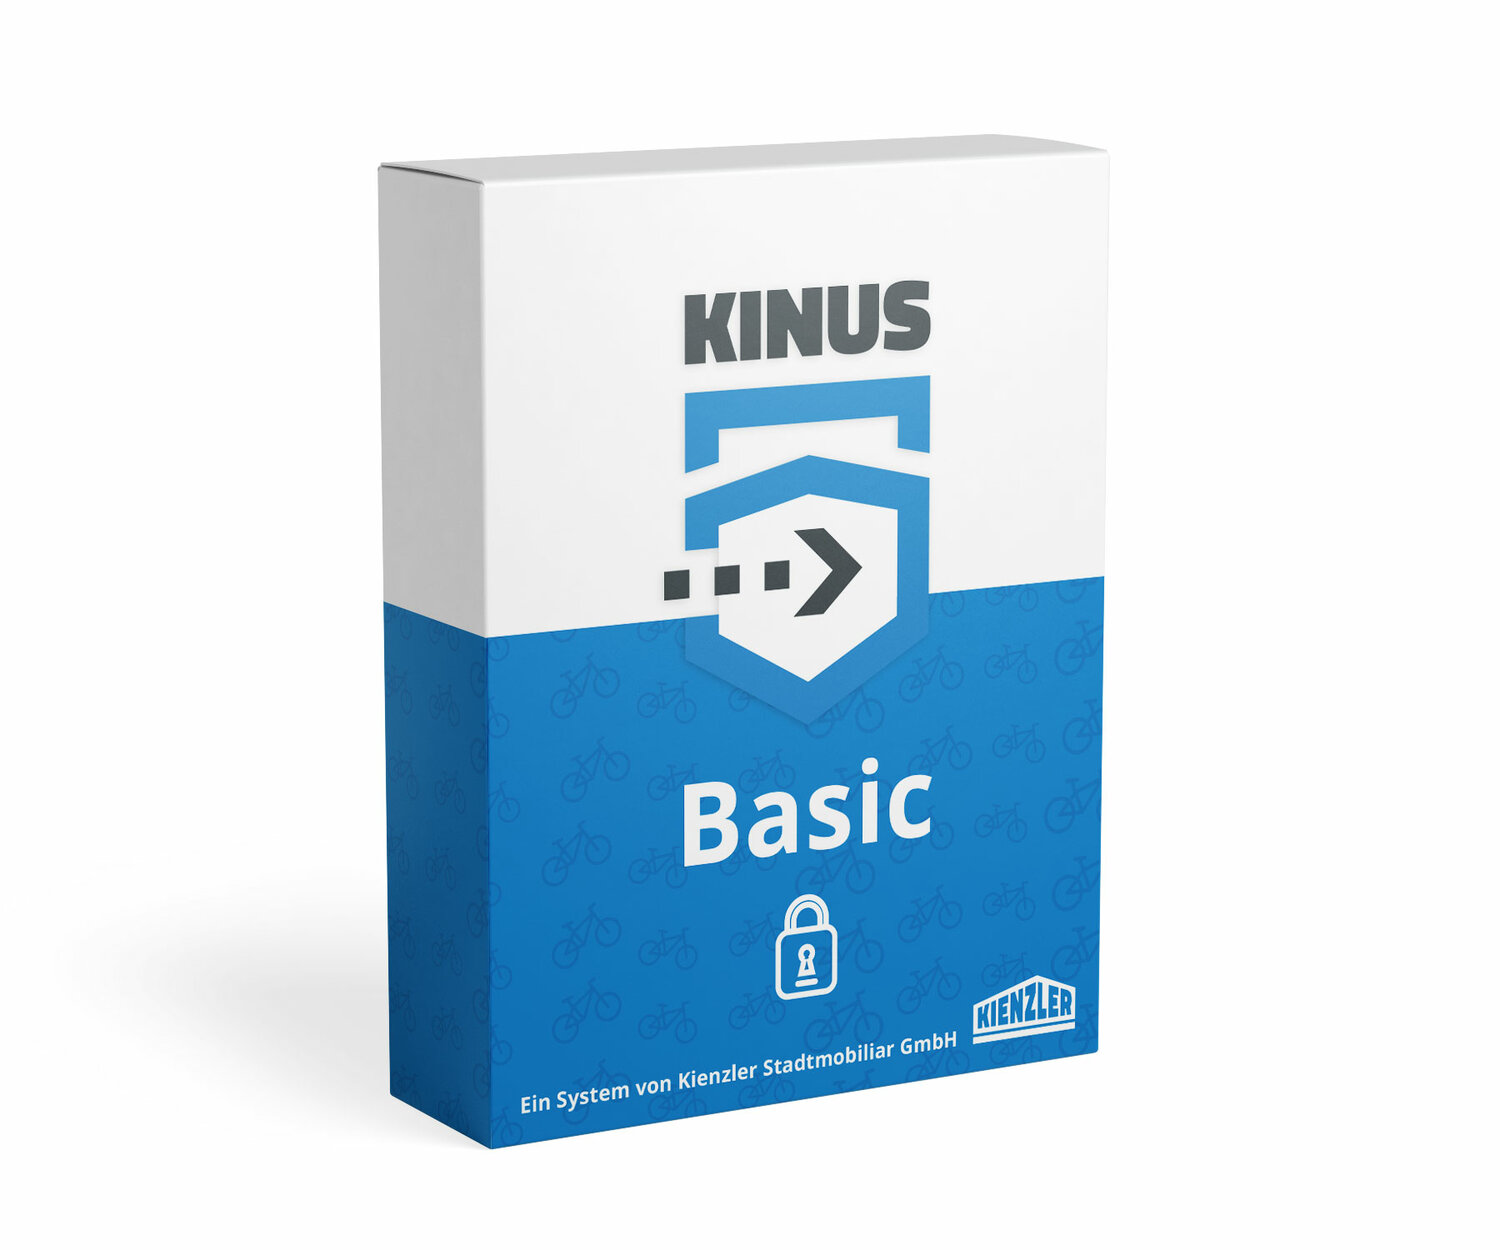 Grafische Darstellung des Zugangssystems Kinus Basic